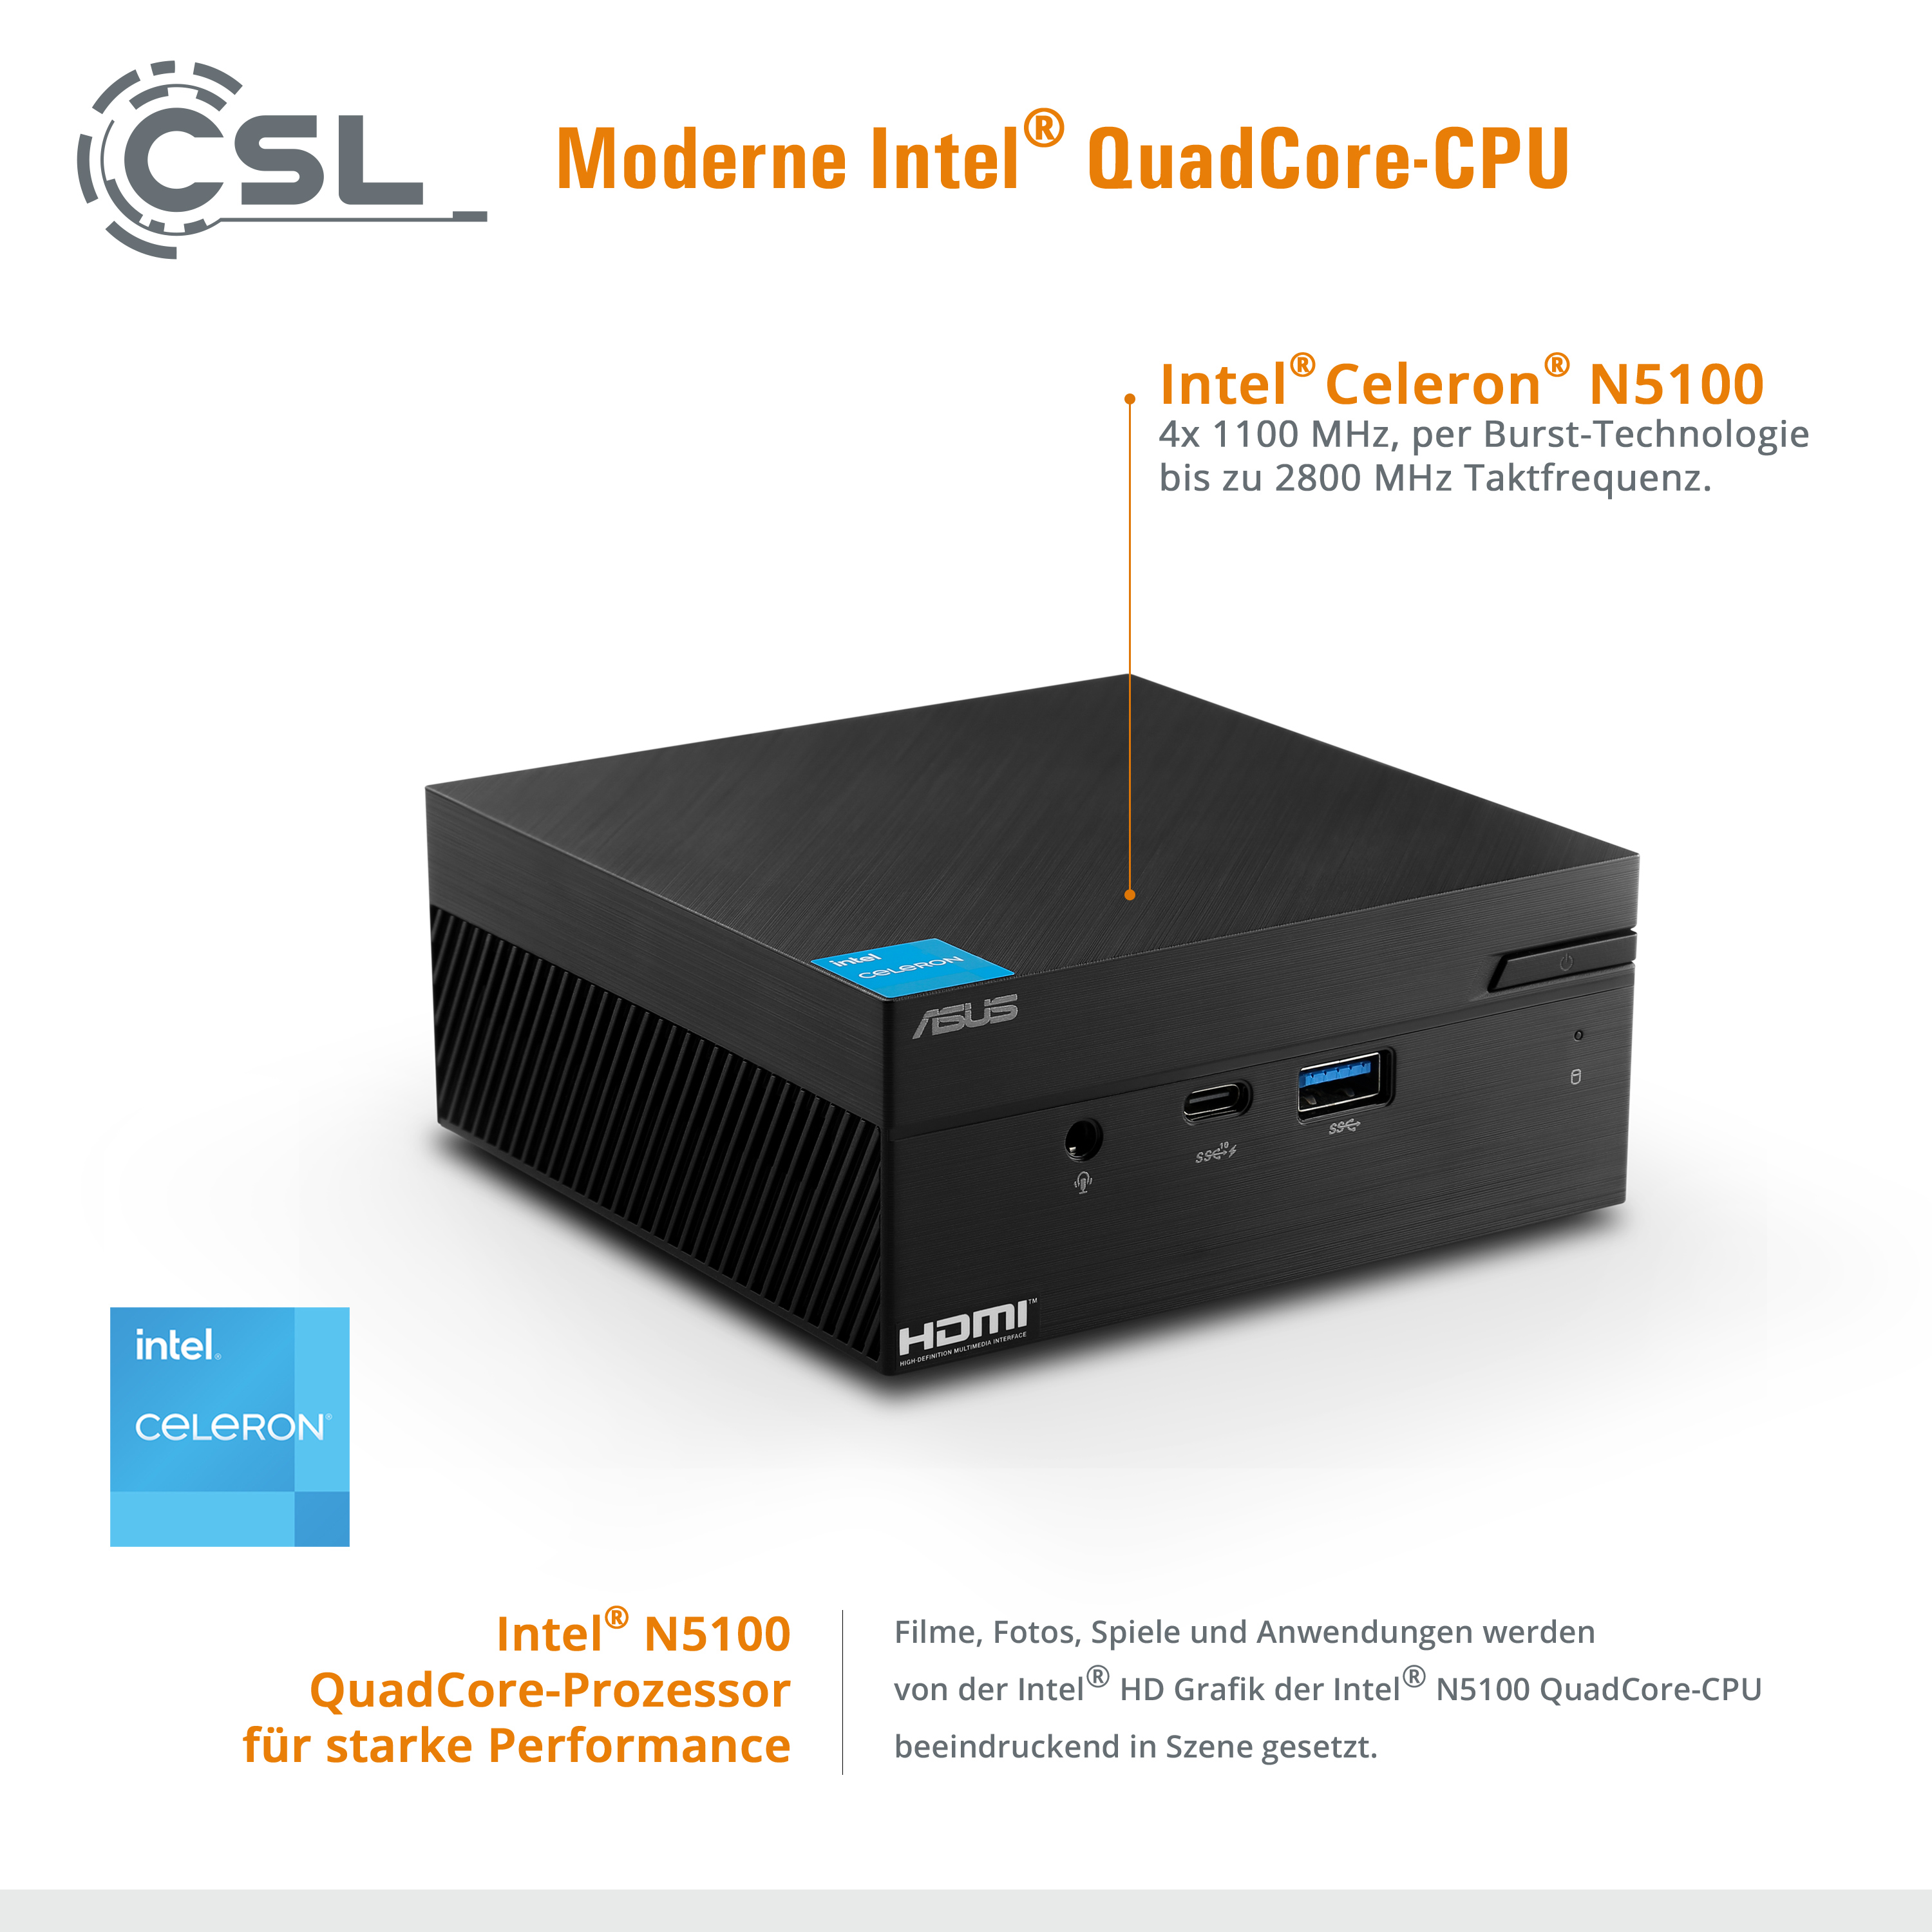 ASUS PN41 / 1000 GB 10 Intel® (64 SSD M.2 Bit), / Win 16 Pro, 1000 GB Pro GB 16 GB 10 RAM, / Windows SSD, Mini-PC